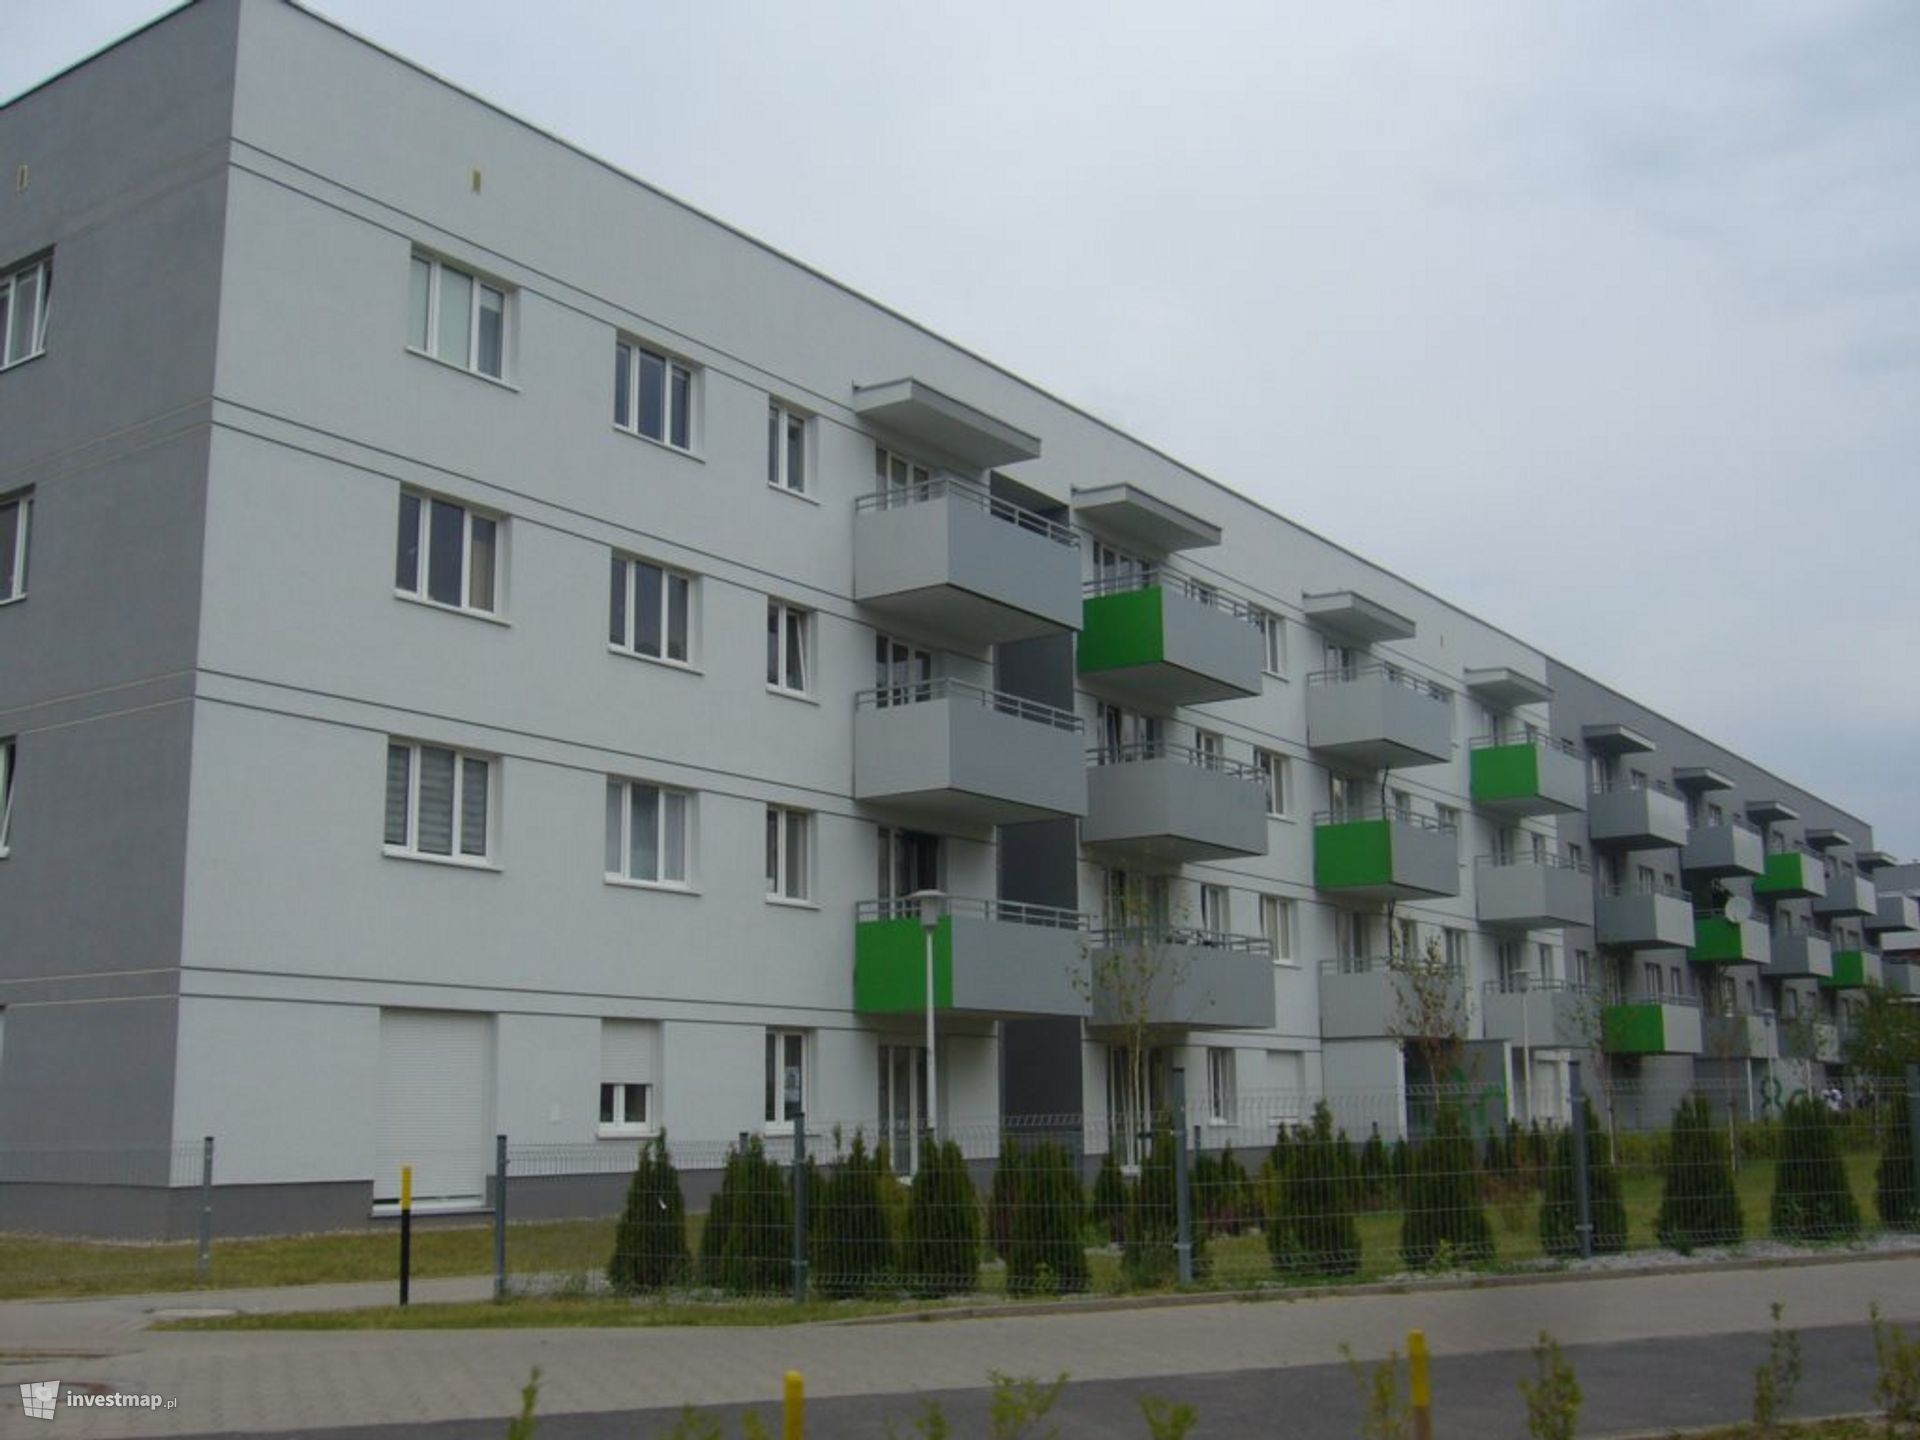 Miasto sprzedało deweloperom dwie kolejne działki we Wrocławiu. Powstaną na nich nowe osiedla mieszkaniowe